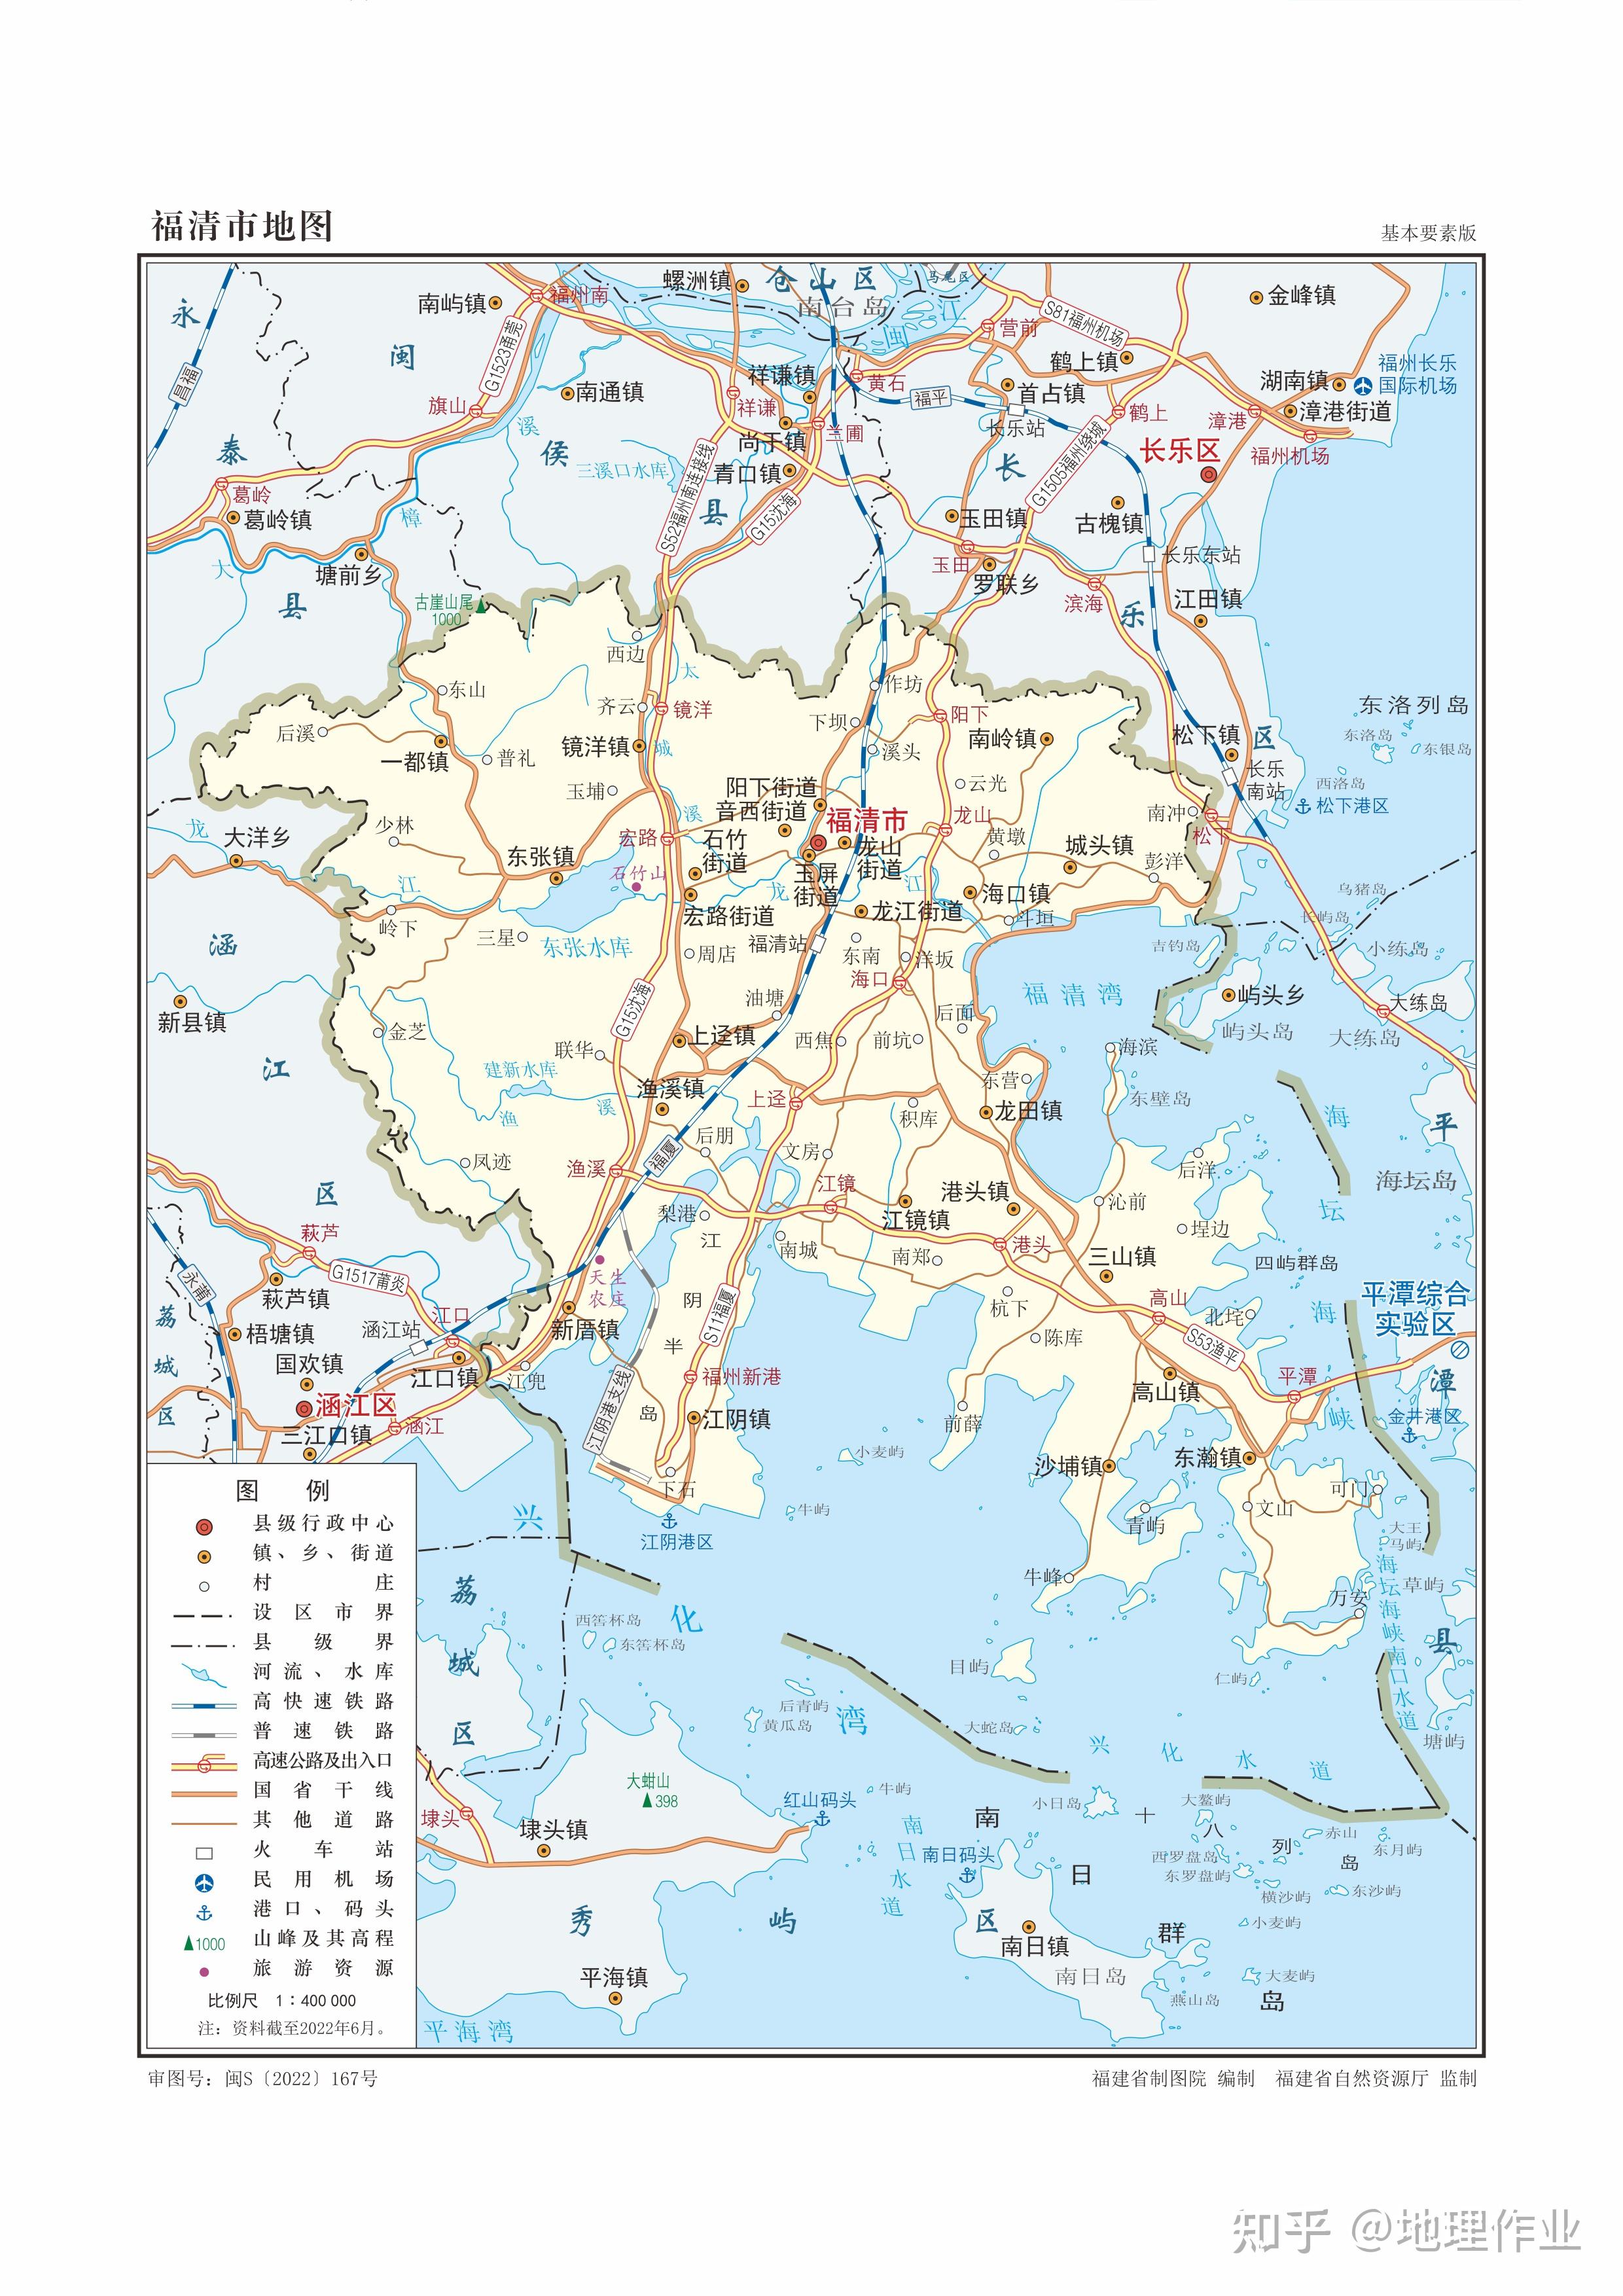 福州市行政区划地图-图库-五毛网